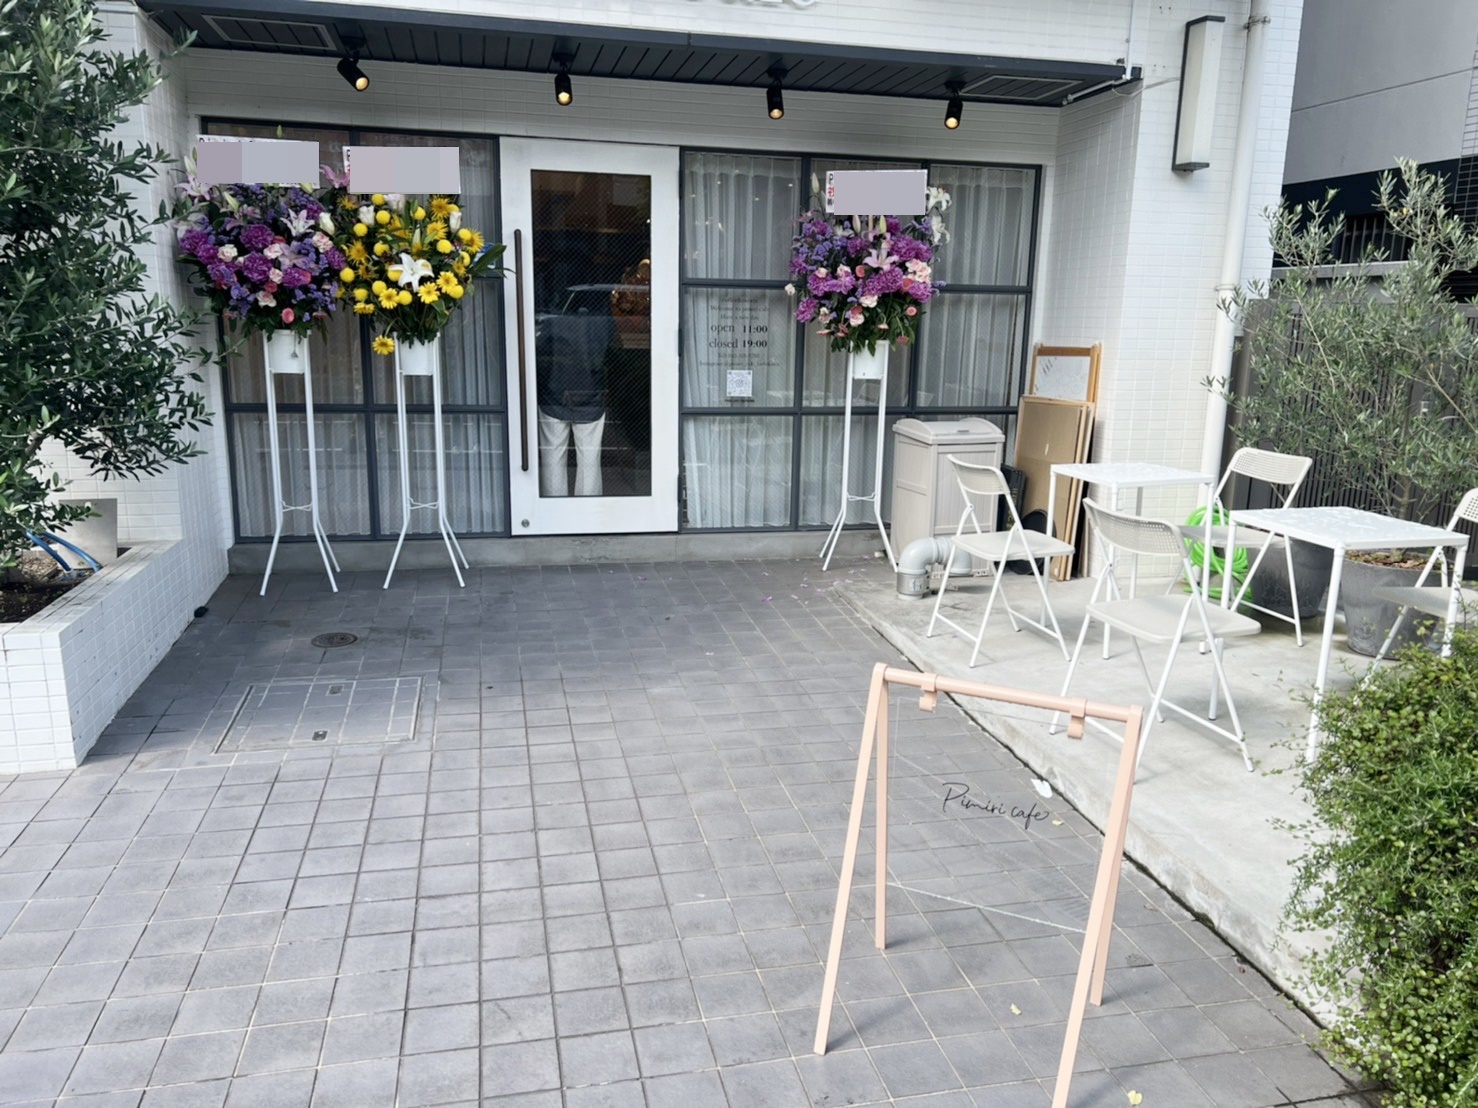 立川市 クロッフルもちもち オープンした韓国風カフェ Pimiri Cafe へ行ってきました ヨッチ Yahoo Japan クリエイターズプログラム